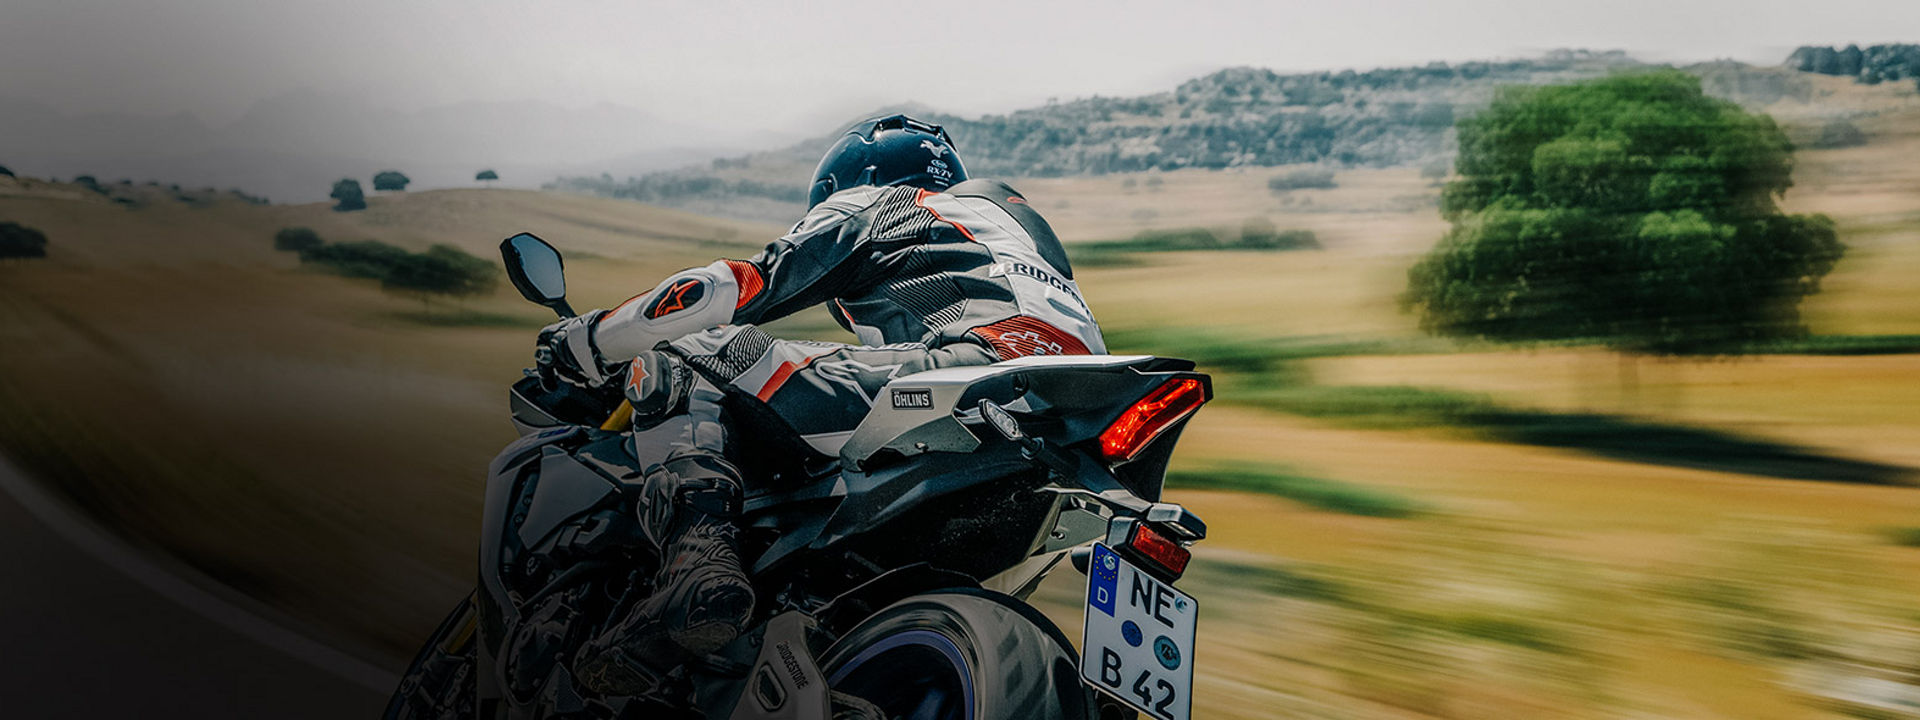 Na ovoj slici prikazan je motociklist koji vozi svoj motocikl sa sportskim gumama Bridgestone na cesti. 